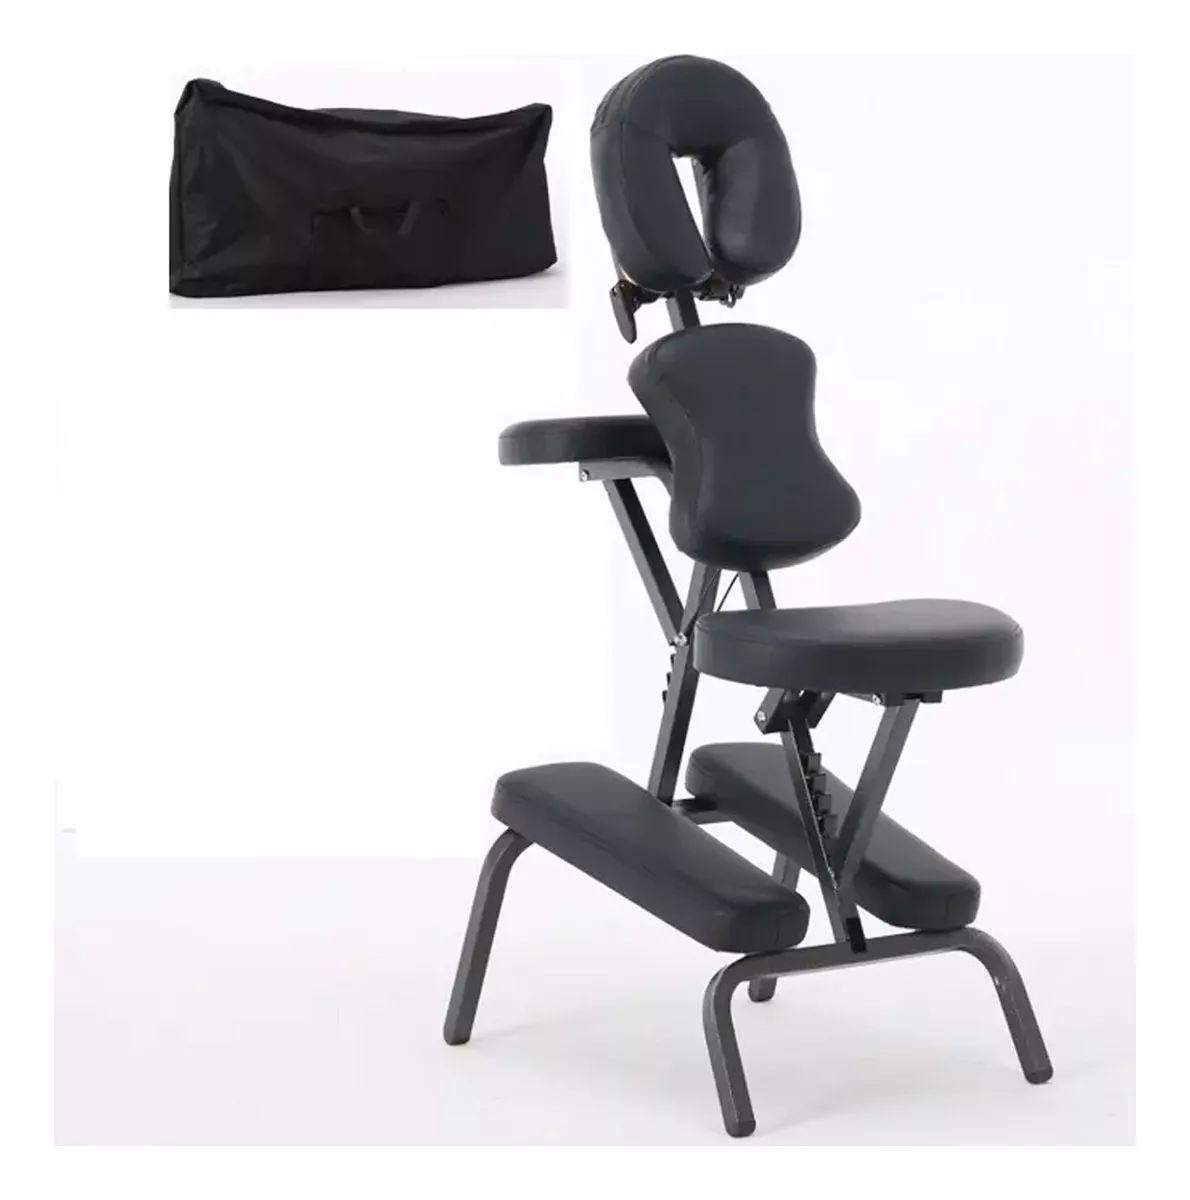 Terceira imagem para pesquisa de cadeira quick massage